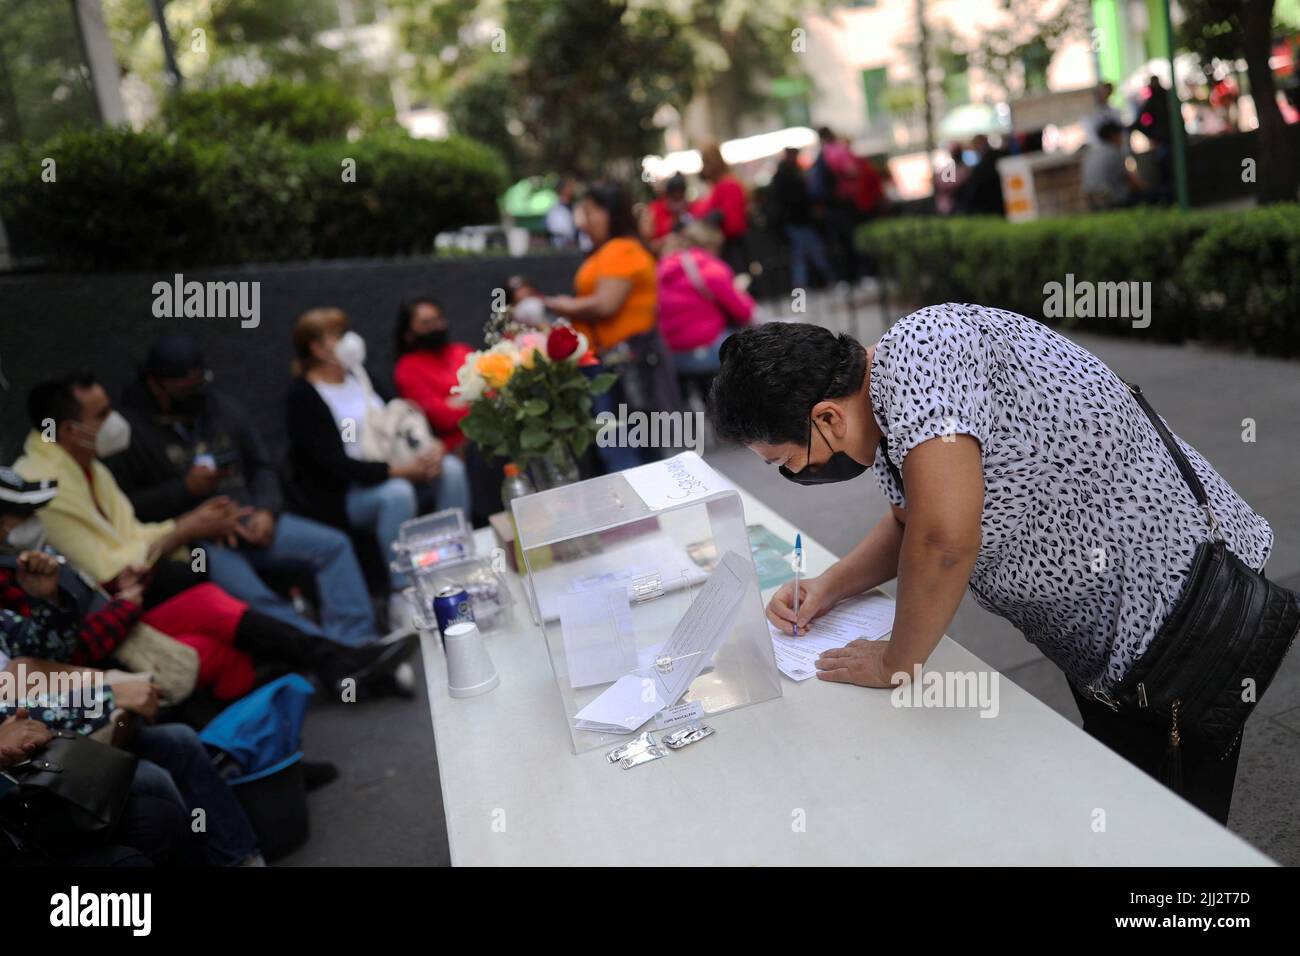 Un trabajador de Telmex vota cerca de la sede de Telmex luego de que el sindicato de la compañía se declarara en huelga después de no llegar a un acuerdo con la compañía sobre un nuevo convenio colectivo laboral, en Ciudad de México, México, el 22 de julio de 2022. REUTERS/Edgard Garrido Foto de stock